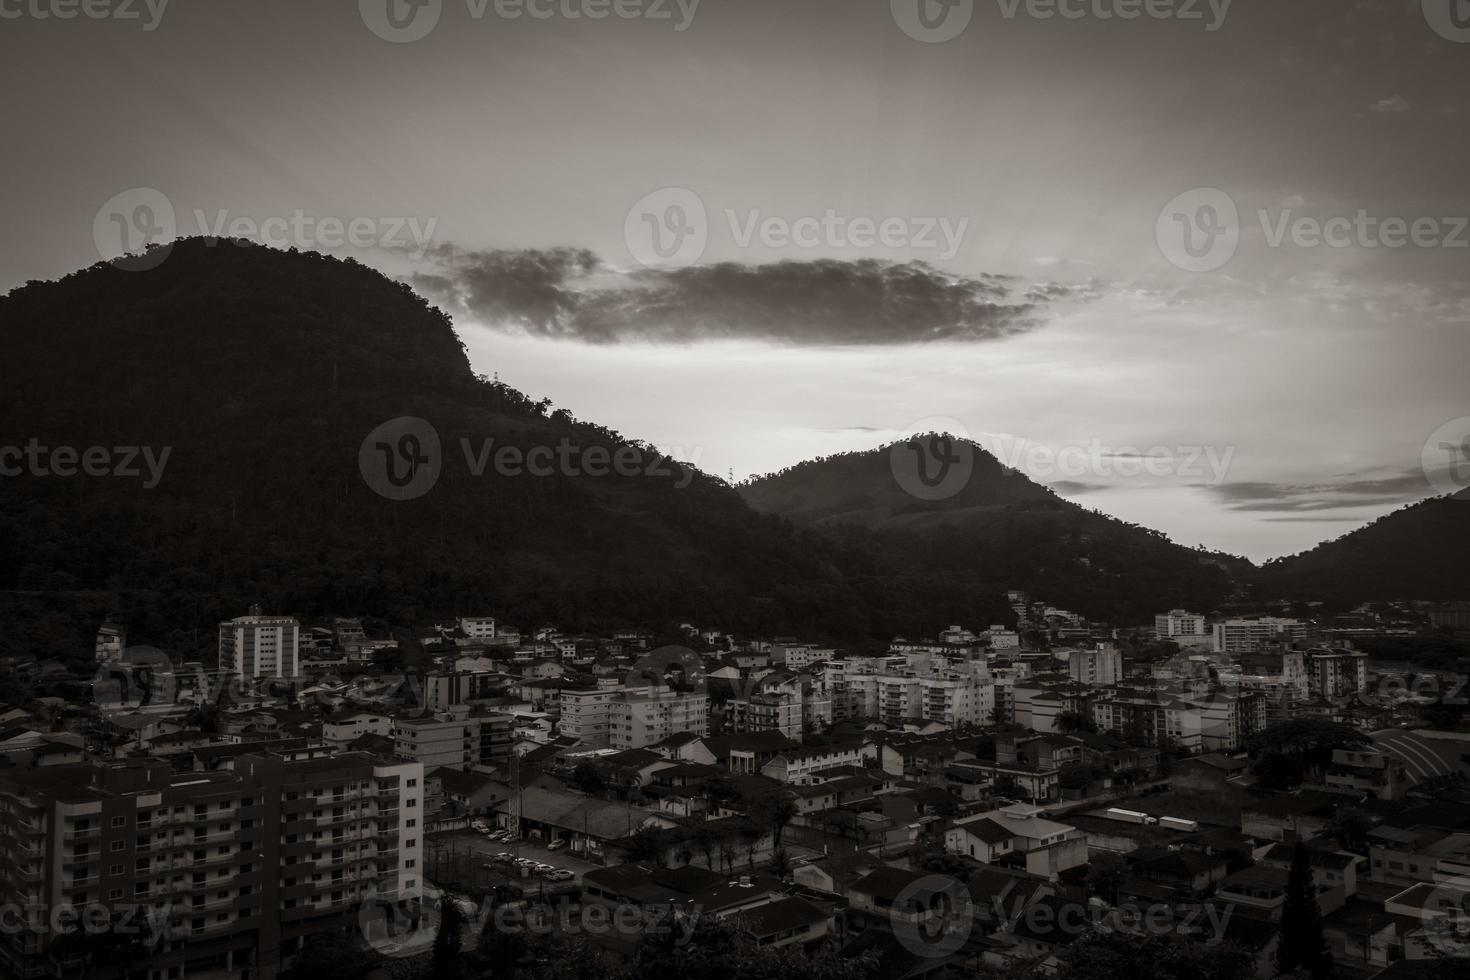 hermoso y colorido amanecer sobre las montañas angra dos reis brasil. foto